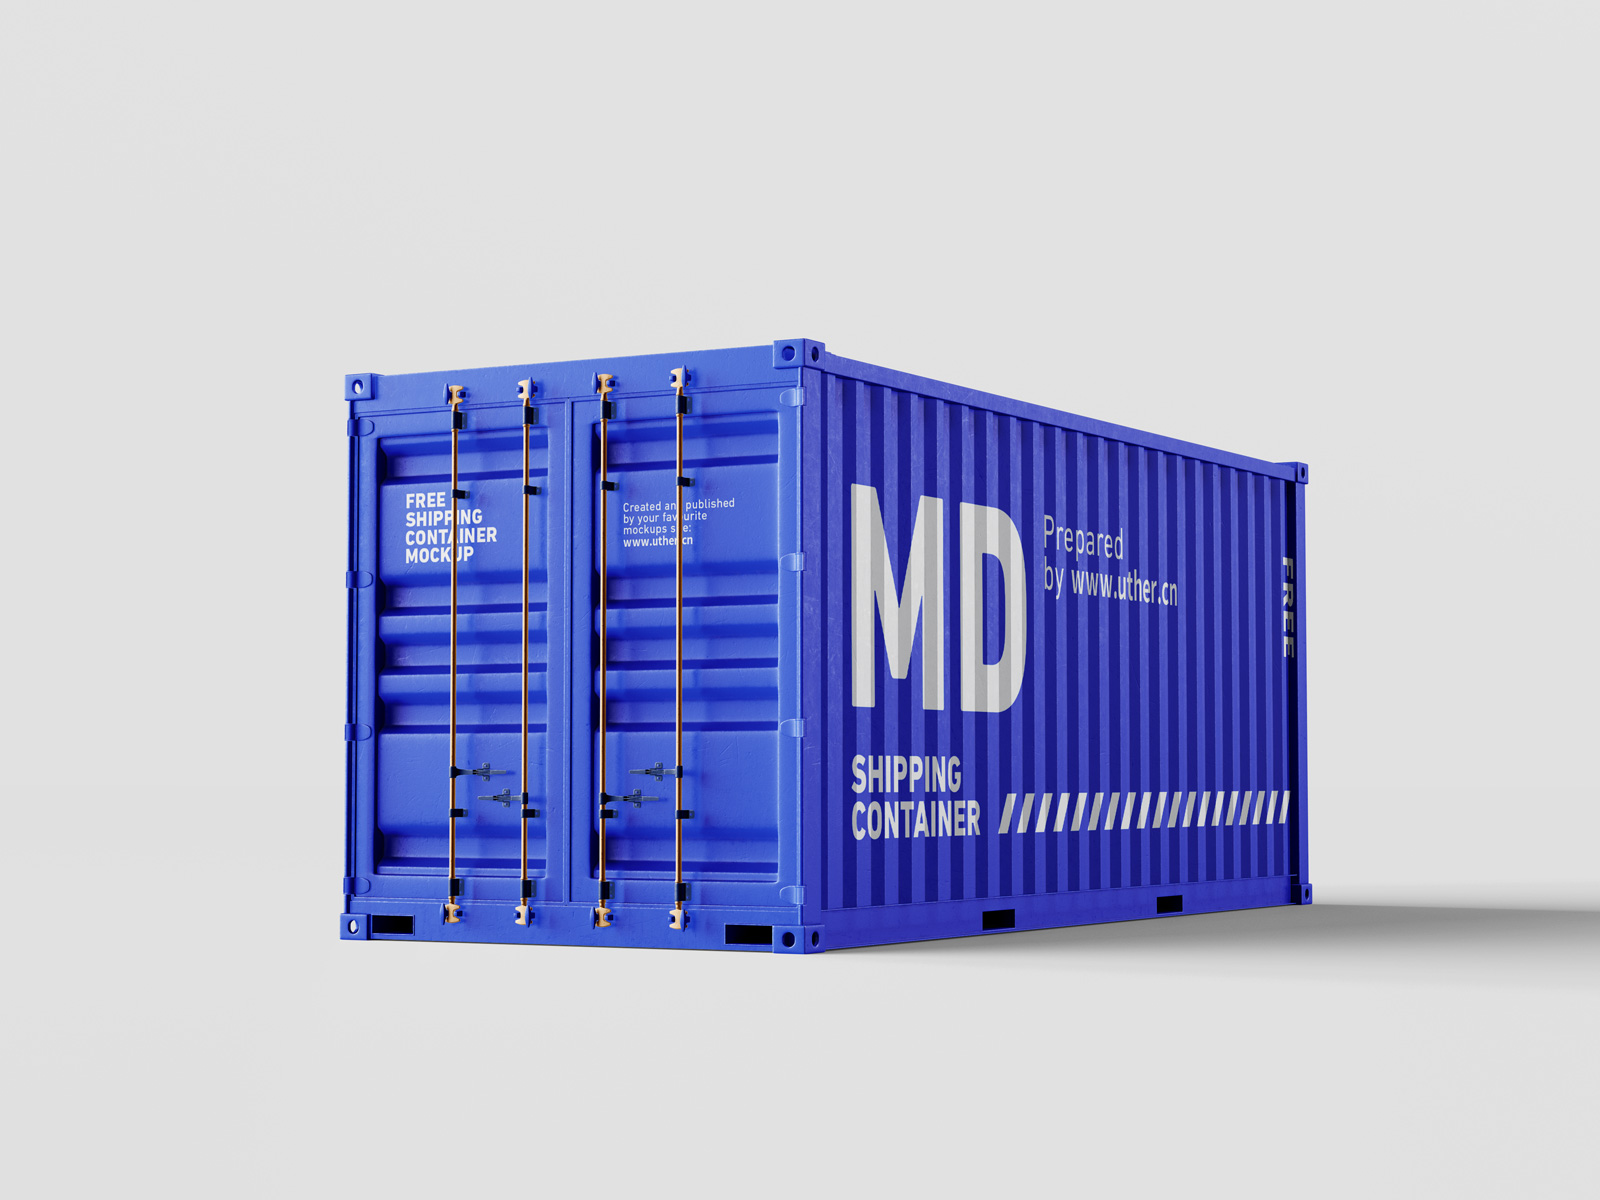 高质量侧面运输集装箱样机模型container mockup .psd素材